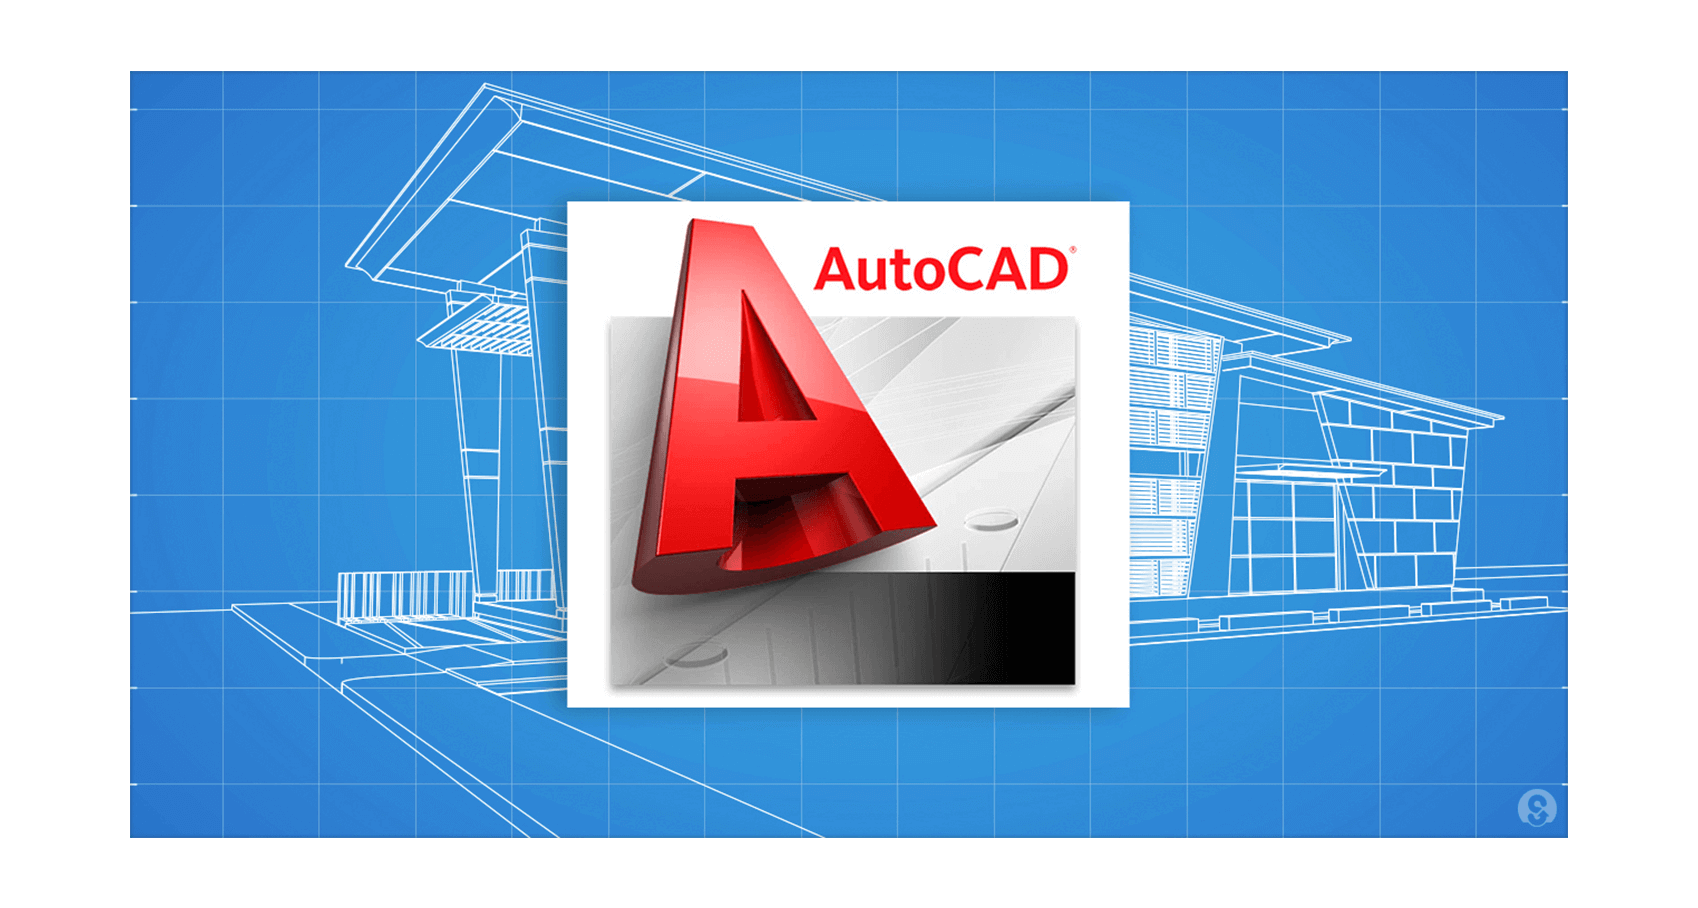 Khoá học AutoCAD Ở Hà Nội  Học Thiết Kế Bản Vẽ Kỹ Thuật Từ Cơ Bản Đến  Chuyên Nghiệp